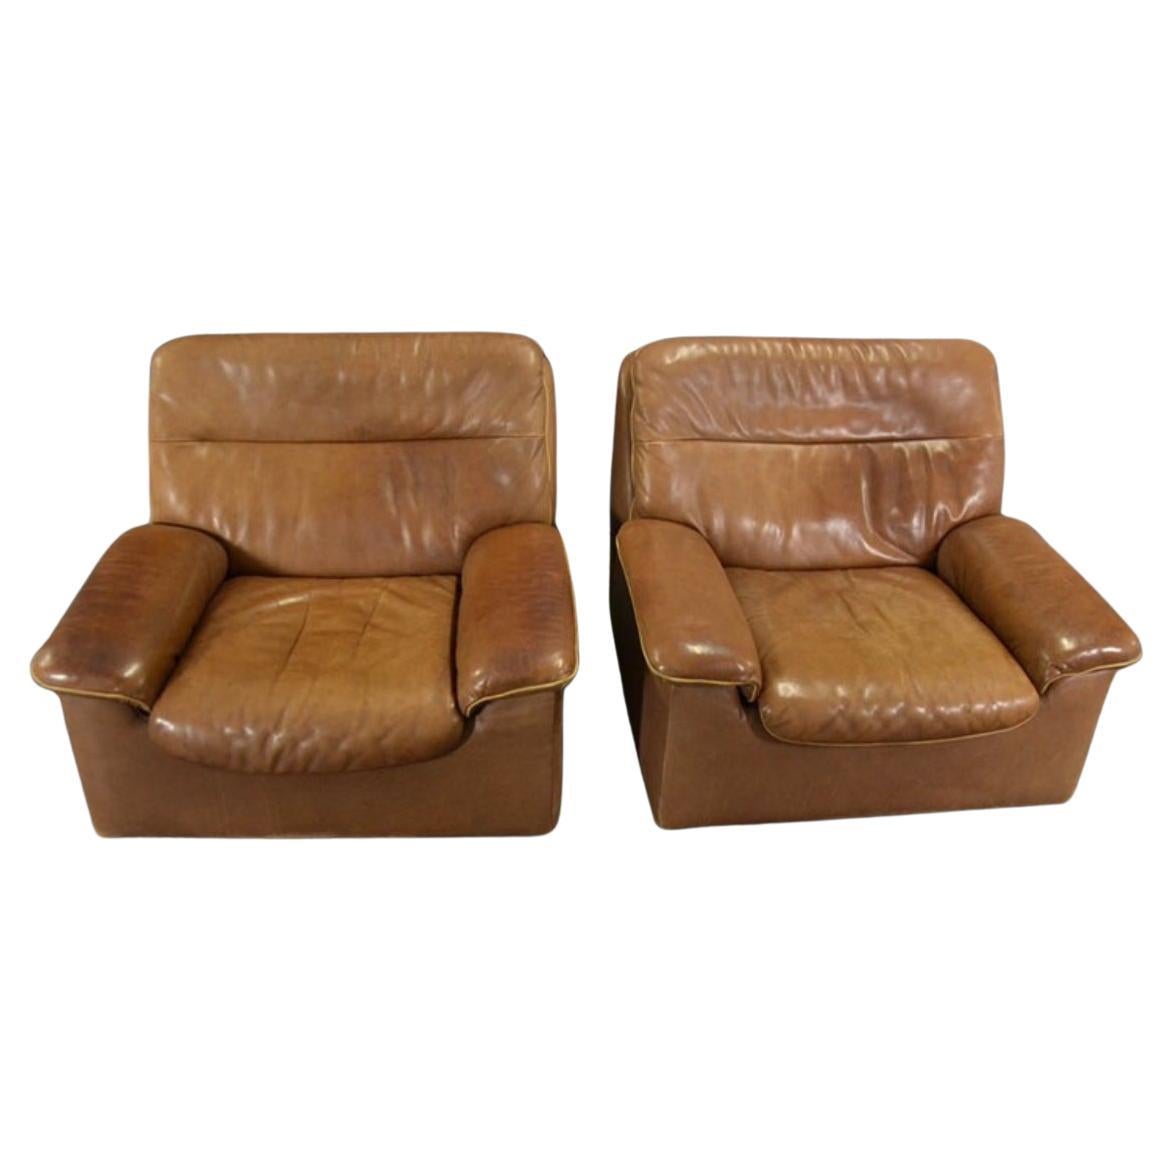 Voici une superbe causeuse en cuir naturel De Sede DS 66 et deux chaises longues simples DS 66 assorties. Cet ensemble est composé d'un cuir épais brun foncé, bien patiné et extrêmement confortable. En état d'origine avec des signes visibles d'usure